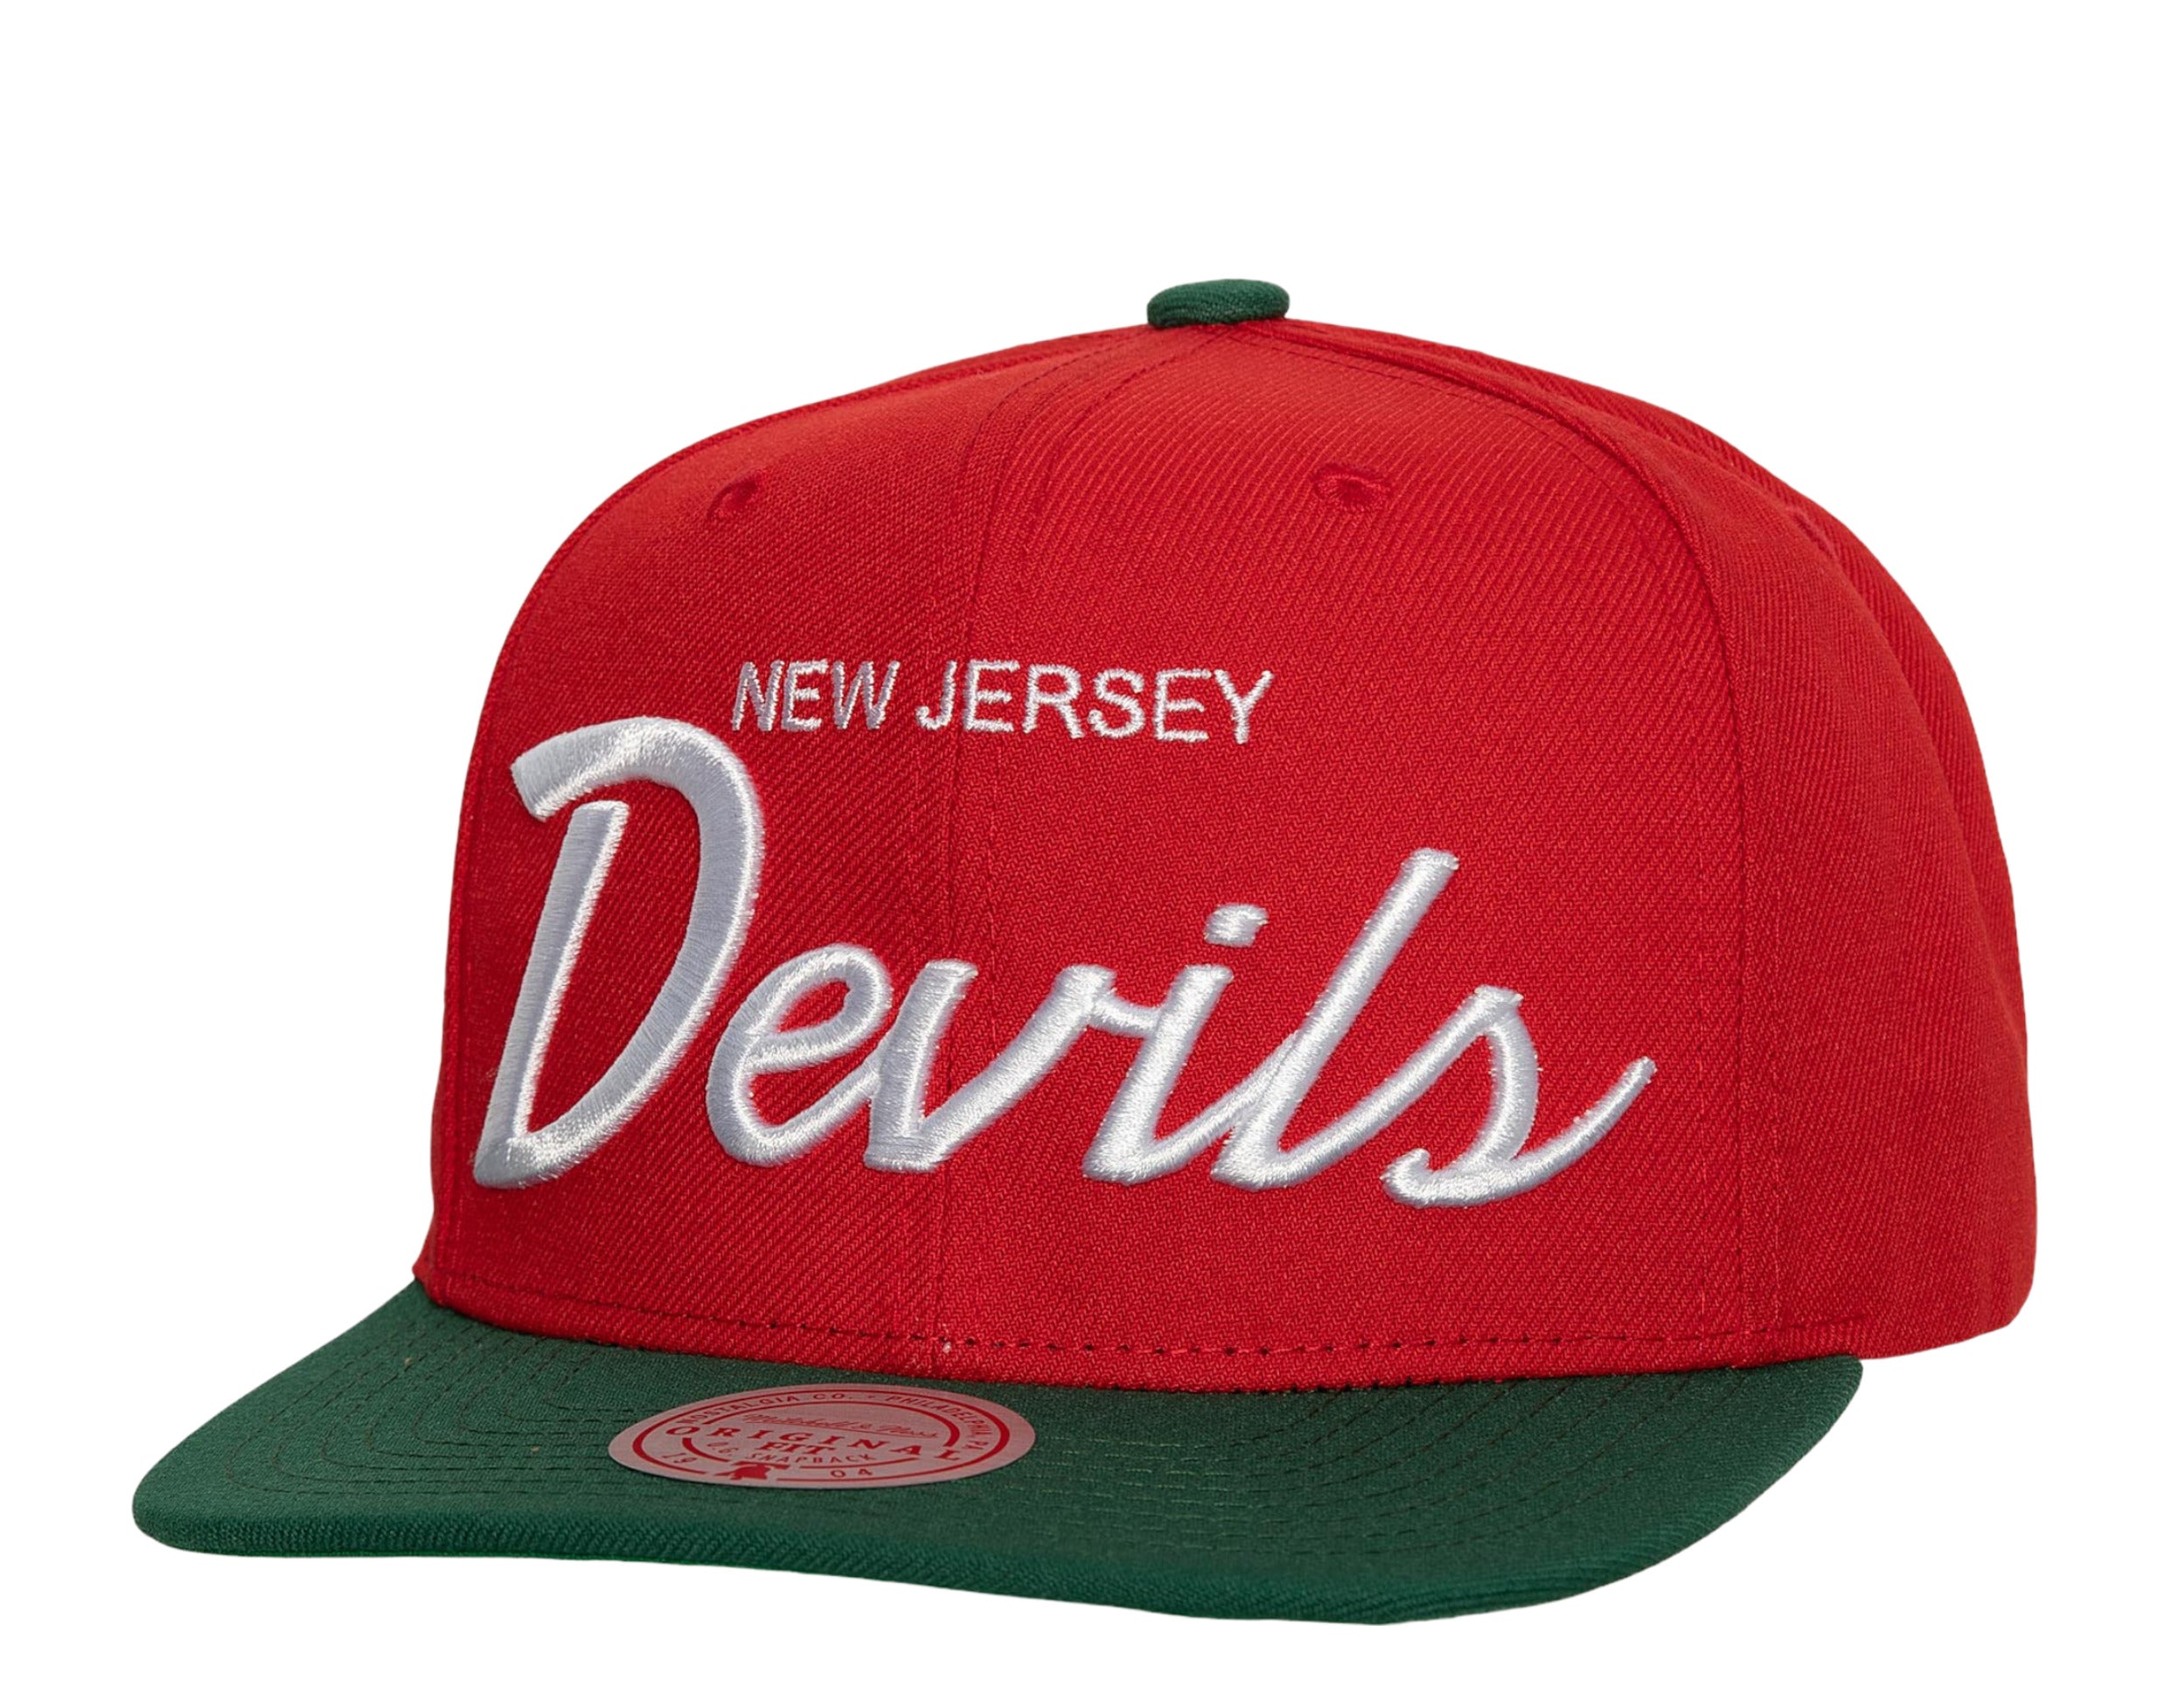 NHL New Jersey Devils Vintage Suede Grey Snapback Hat, Men's, Gray